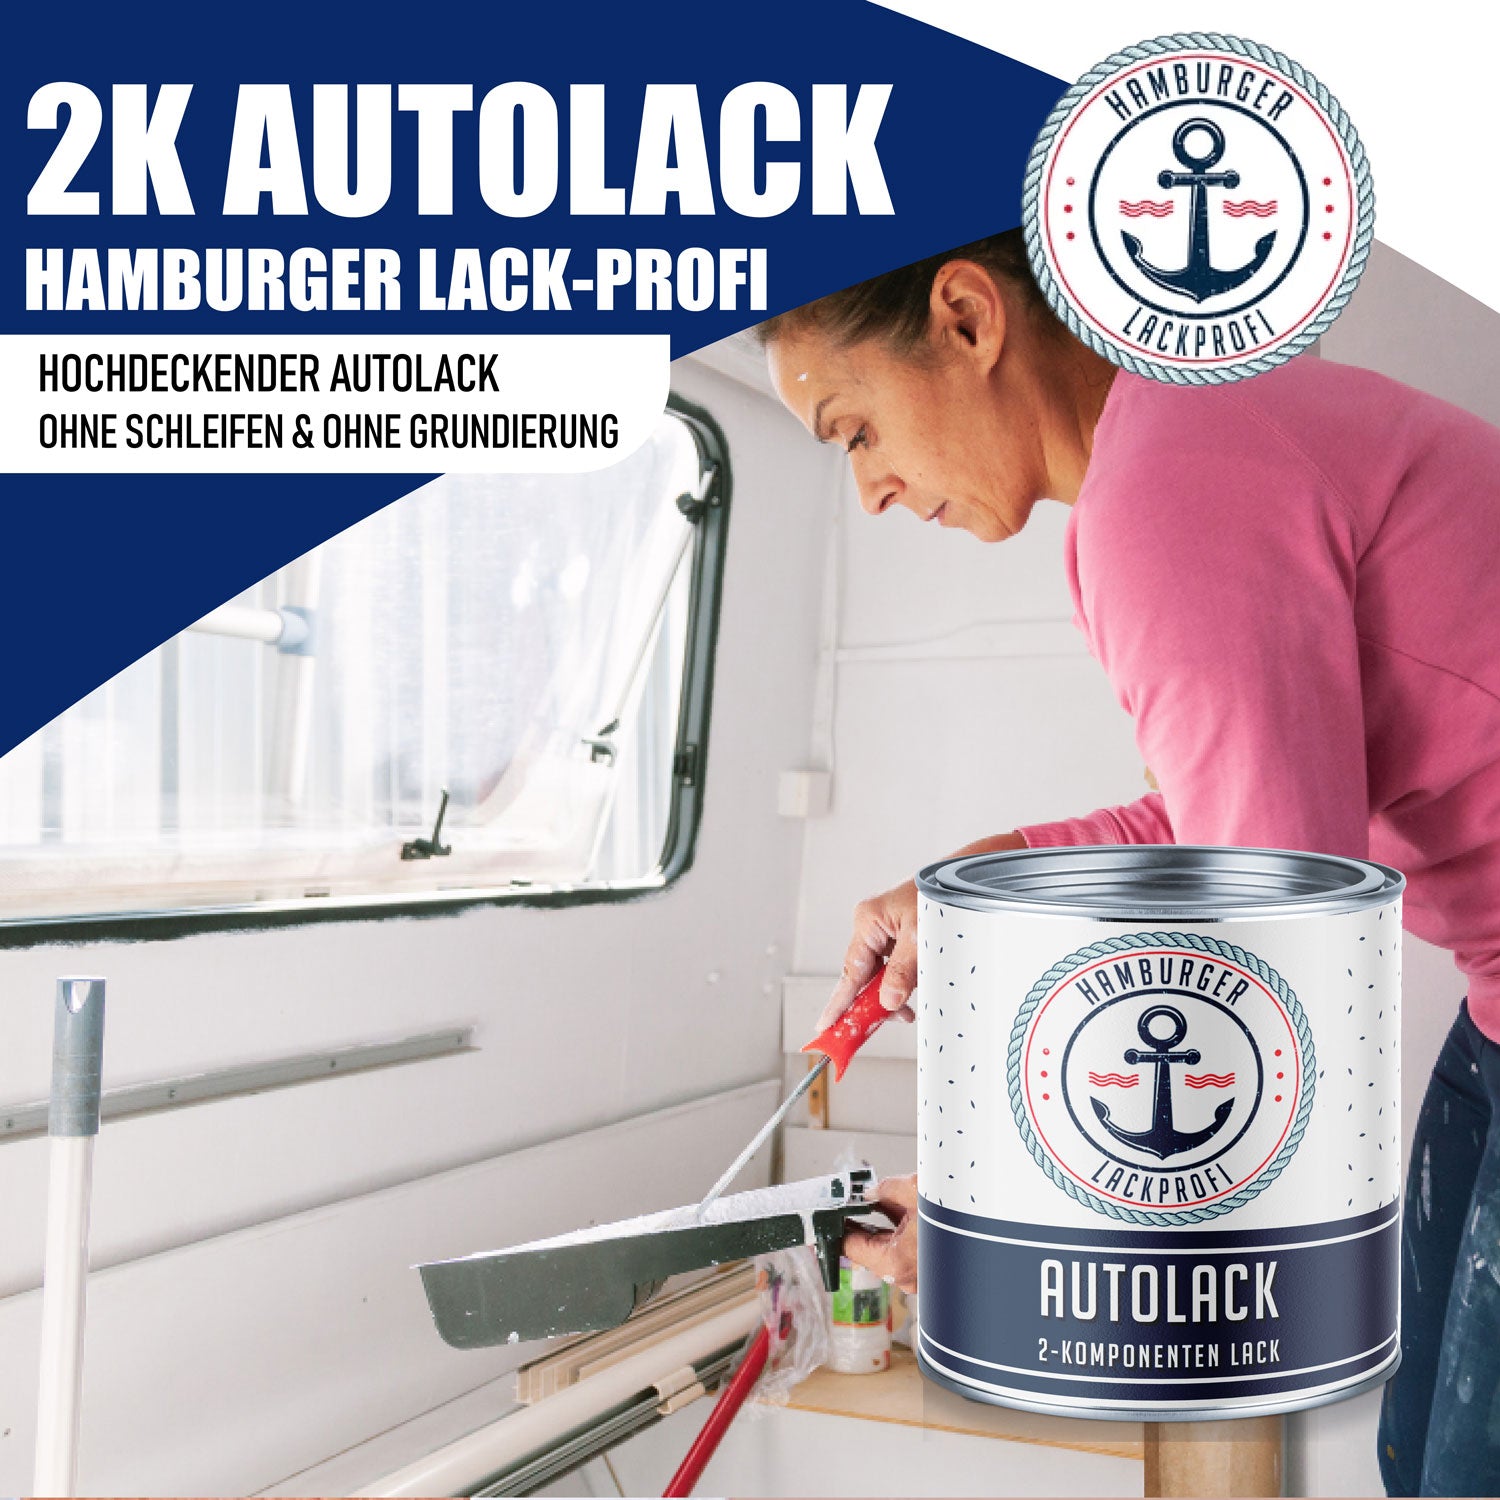 Hamburger Lack-Profi 2K Autolack in Perlweiß RAL 1013 mit Lackierset (X300) & Verdünnung (1 L) - 30% Sparangebot